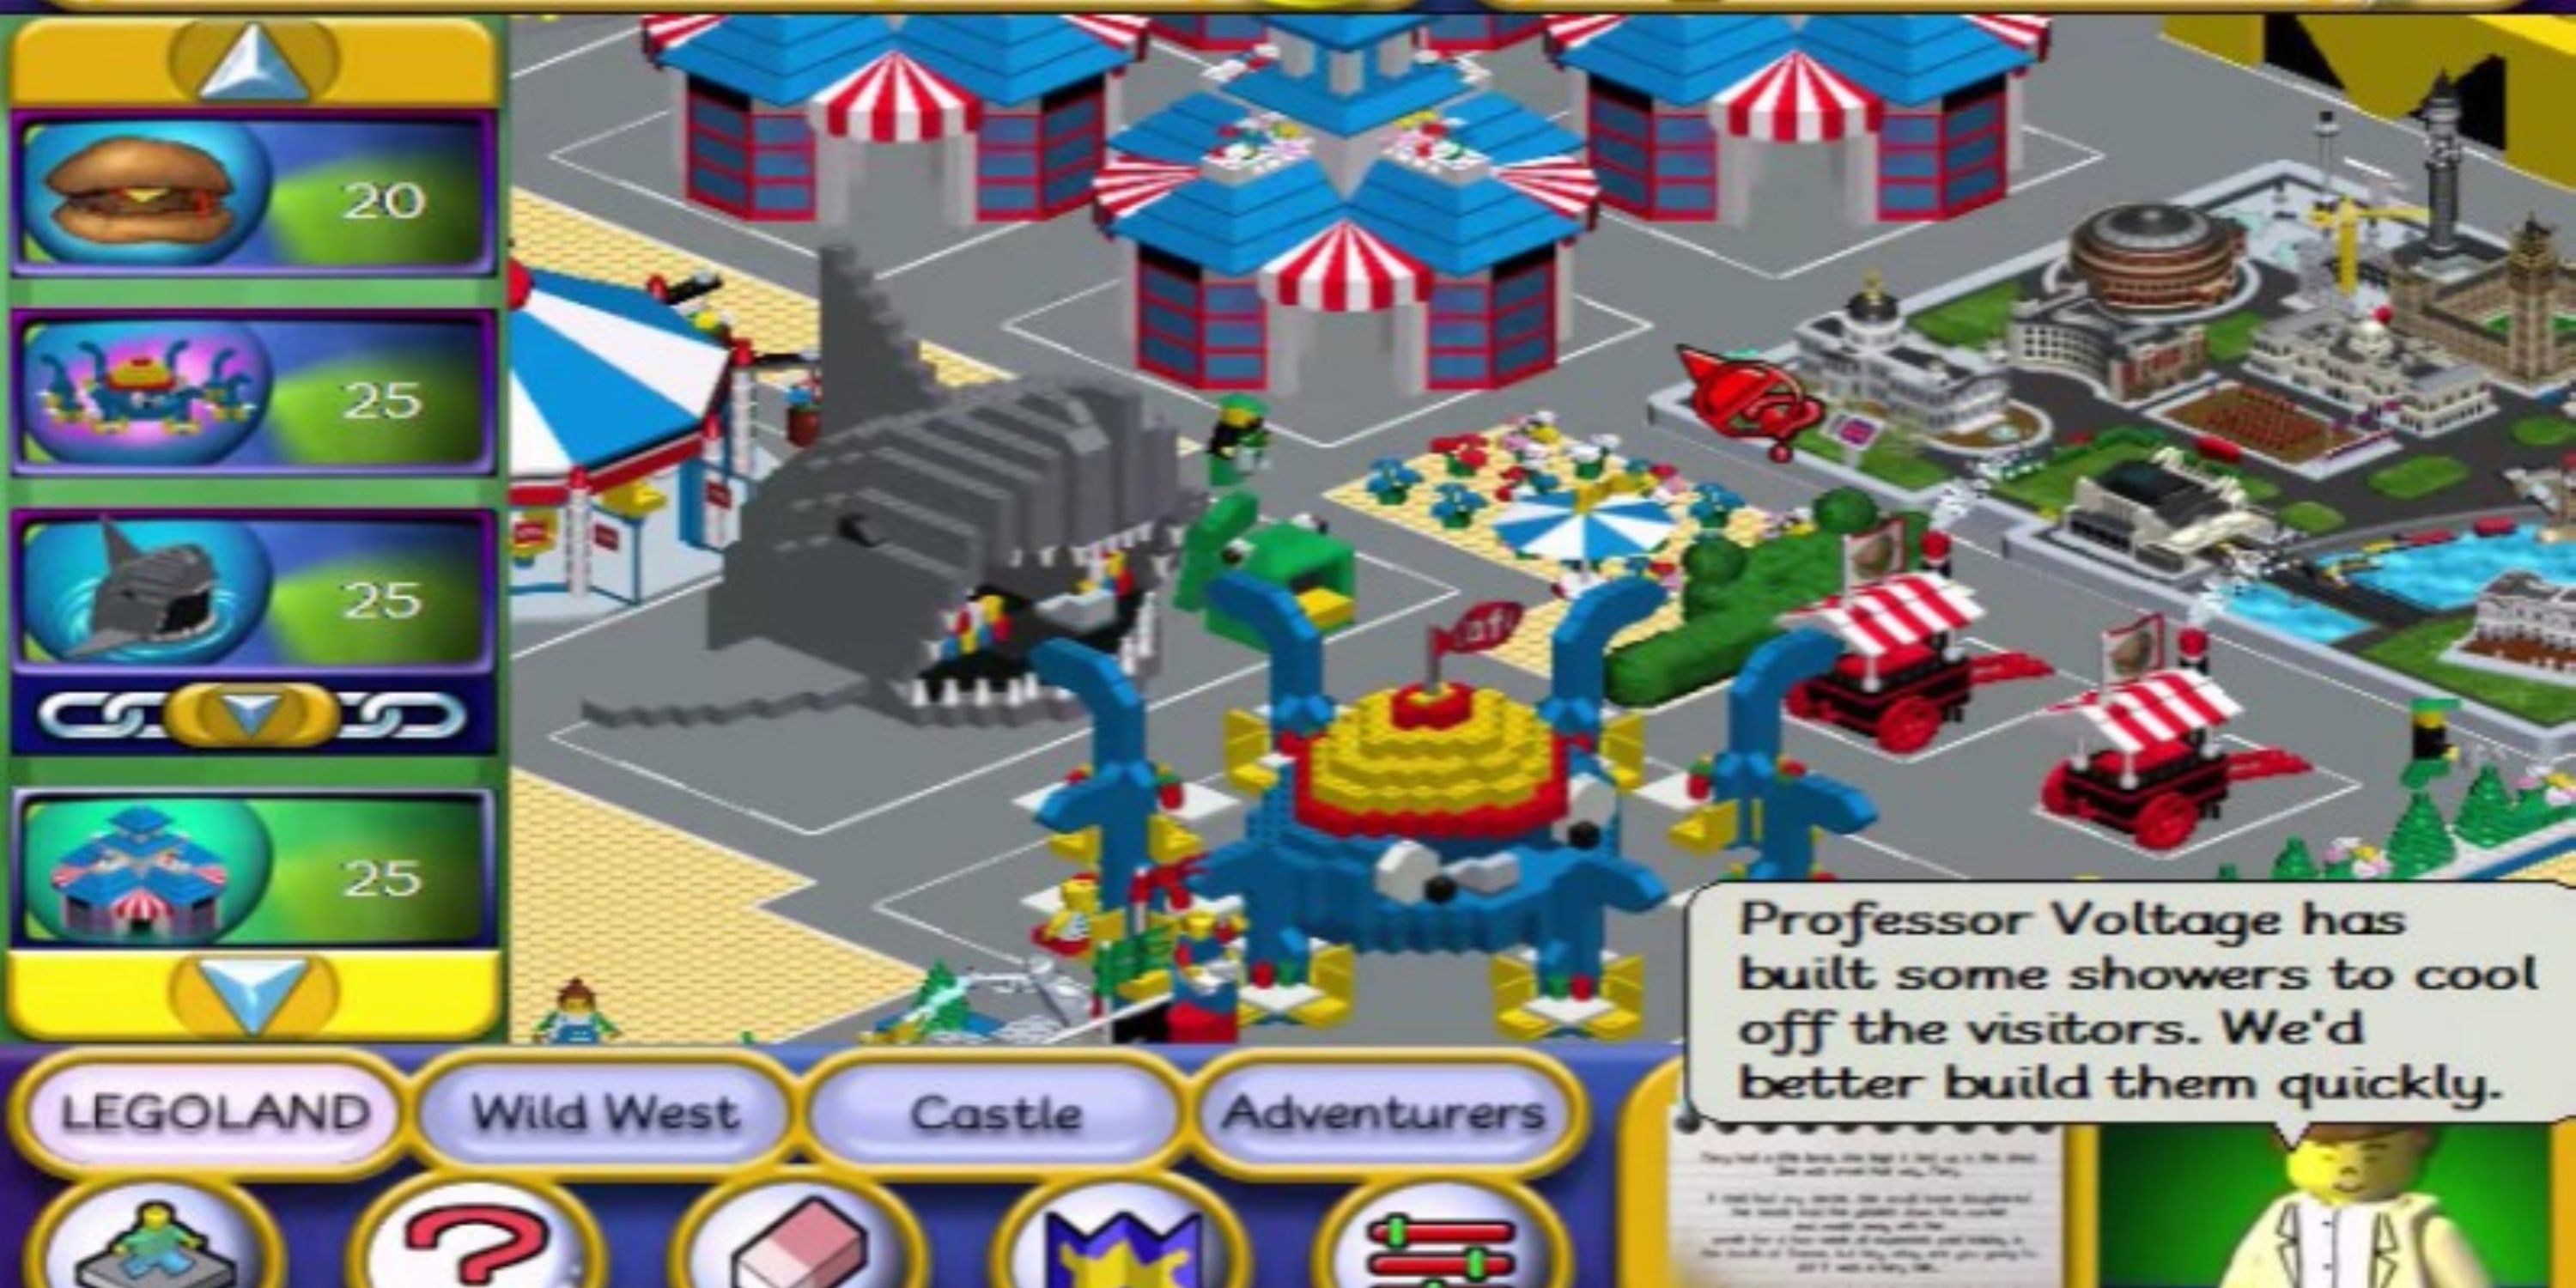 Legoland PC Game gameplay